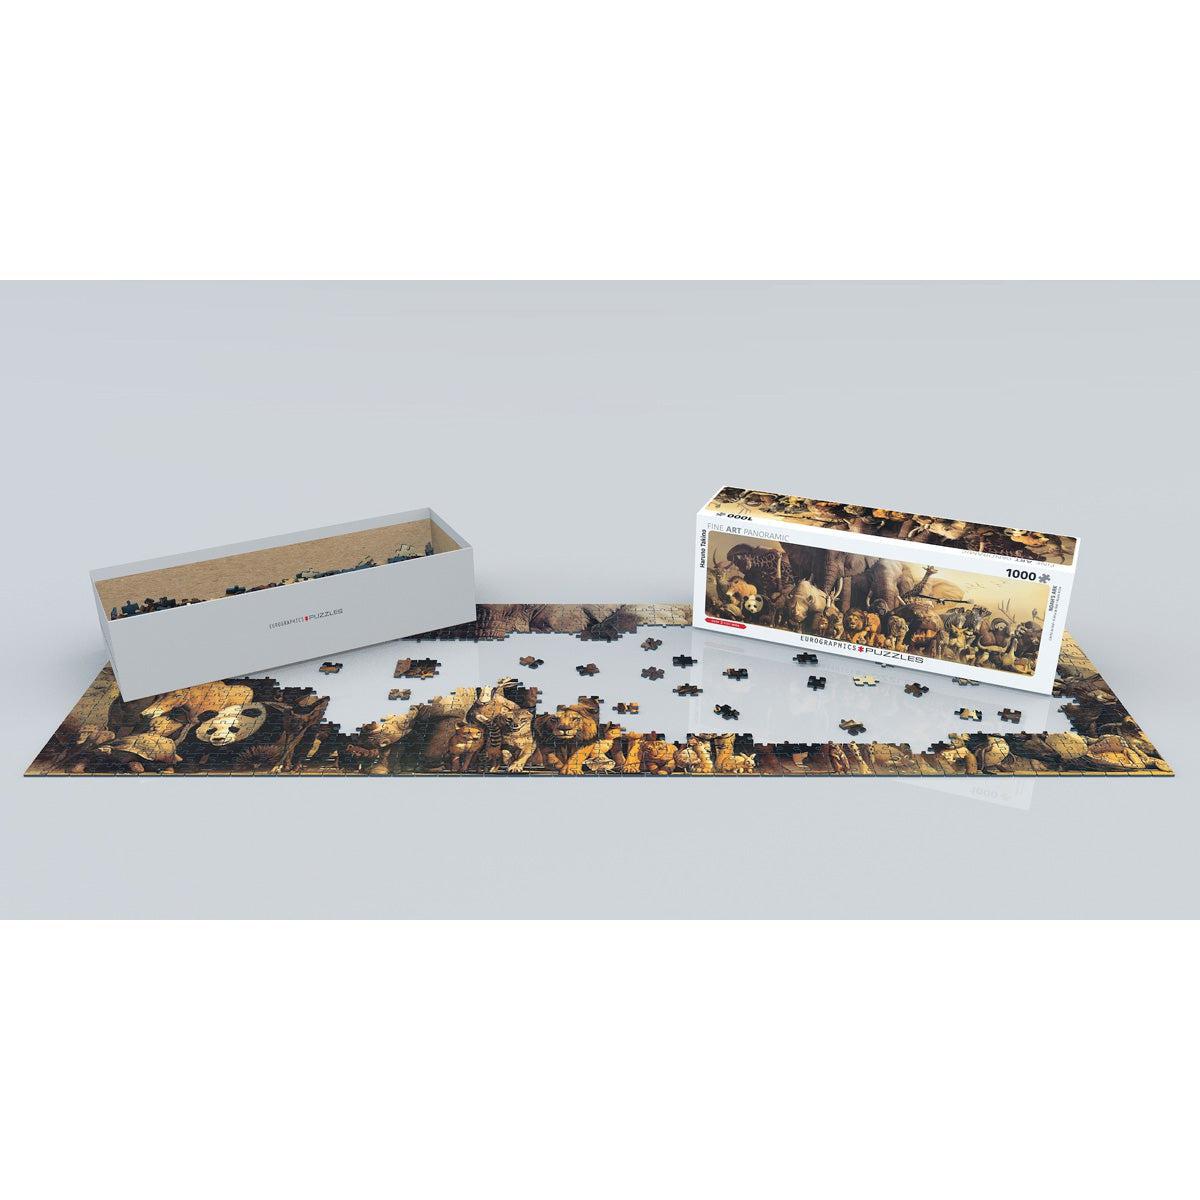 Noah's Ark 1000 Piece Panoramic Jigsaw Puzzle Eurographics